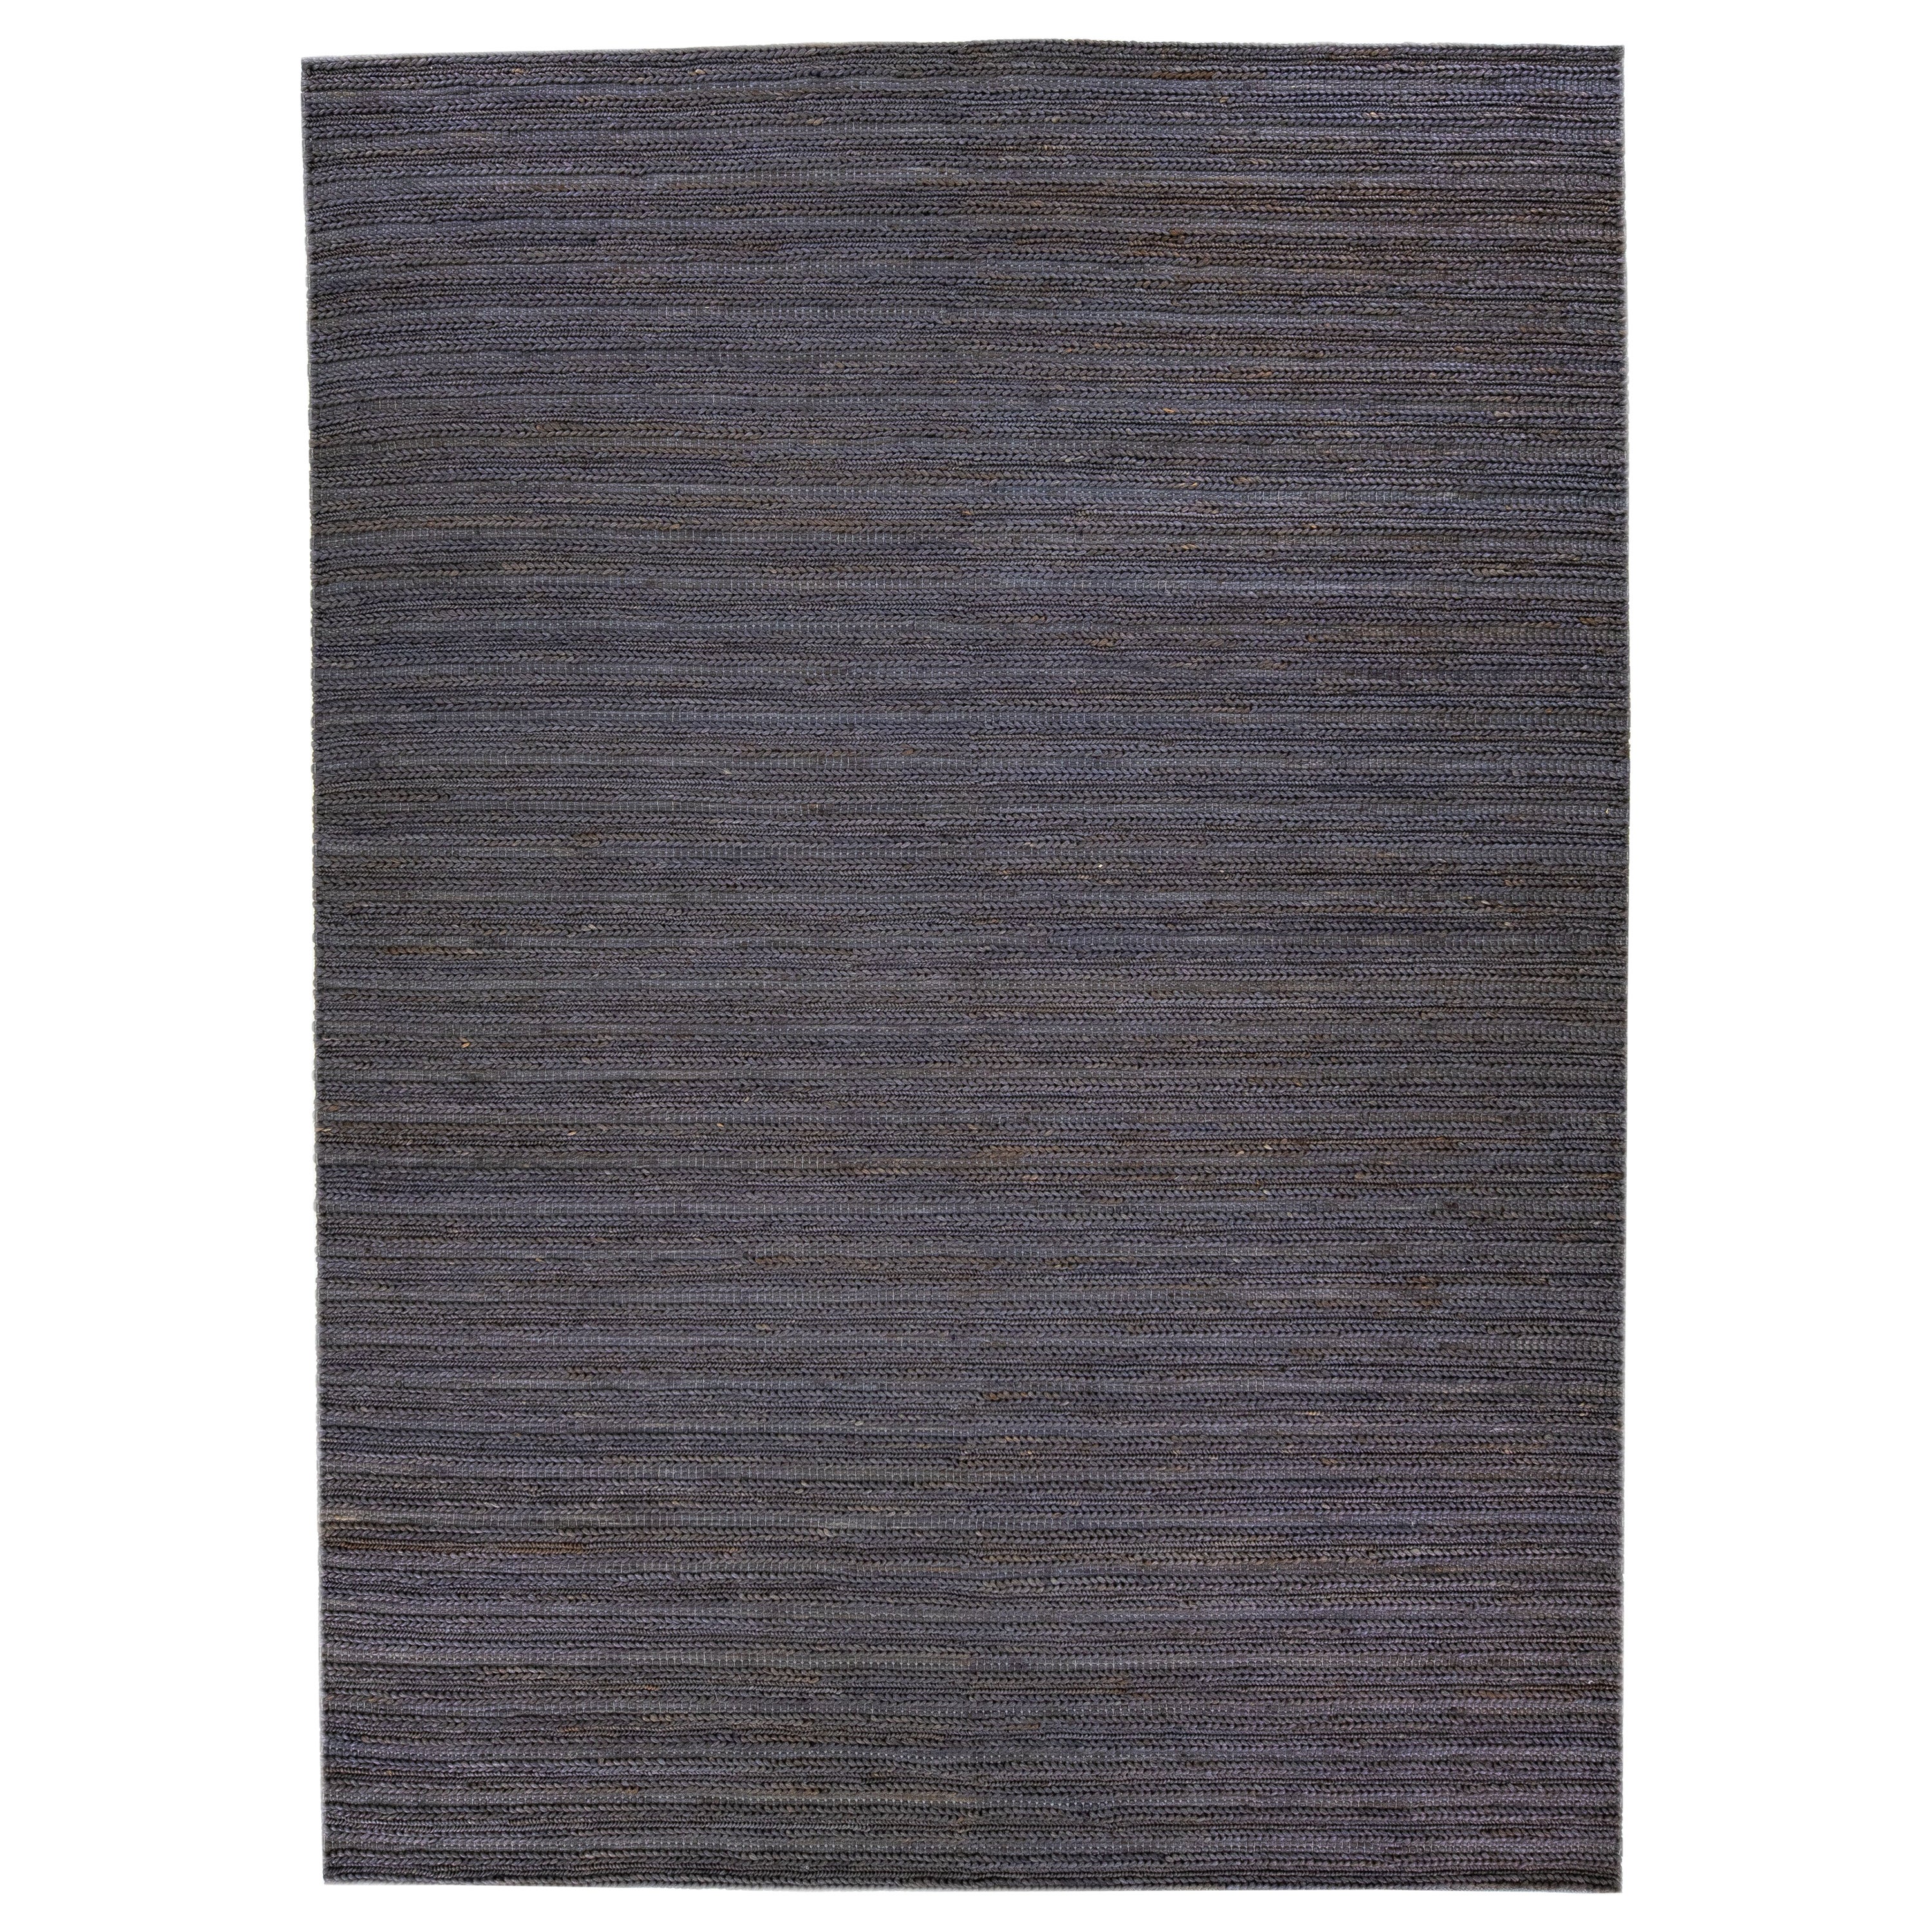 Moderner handgewebter Teppich aus Jute und Baumwolle mit natürlicher Textur und grauer Onyxfarbe